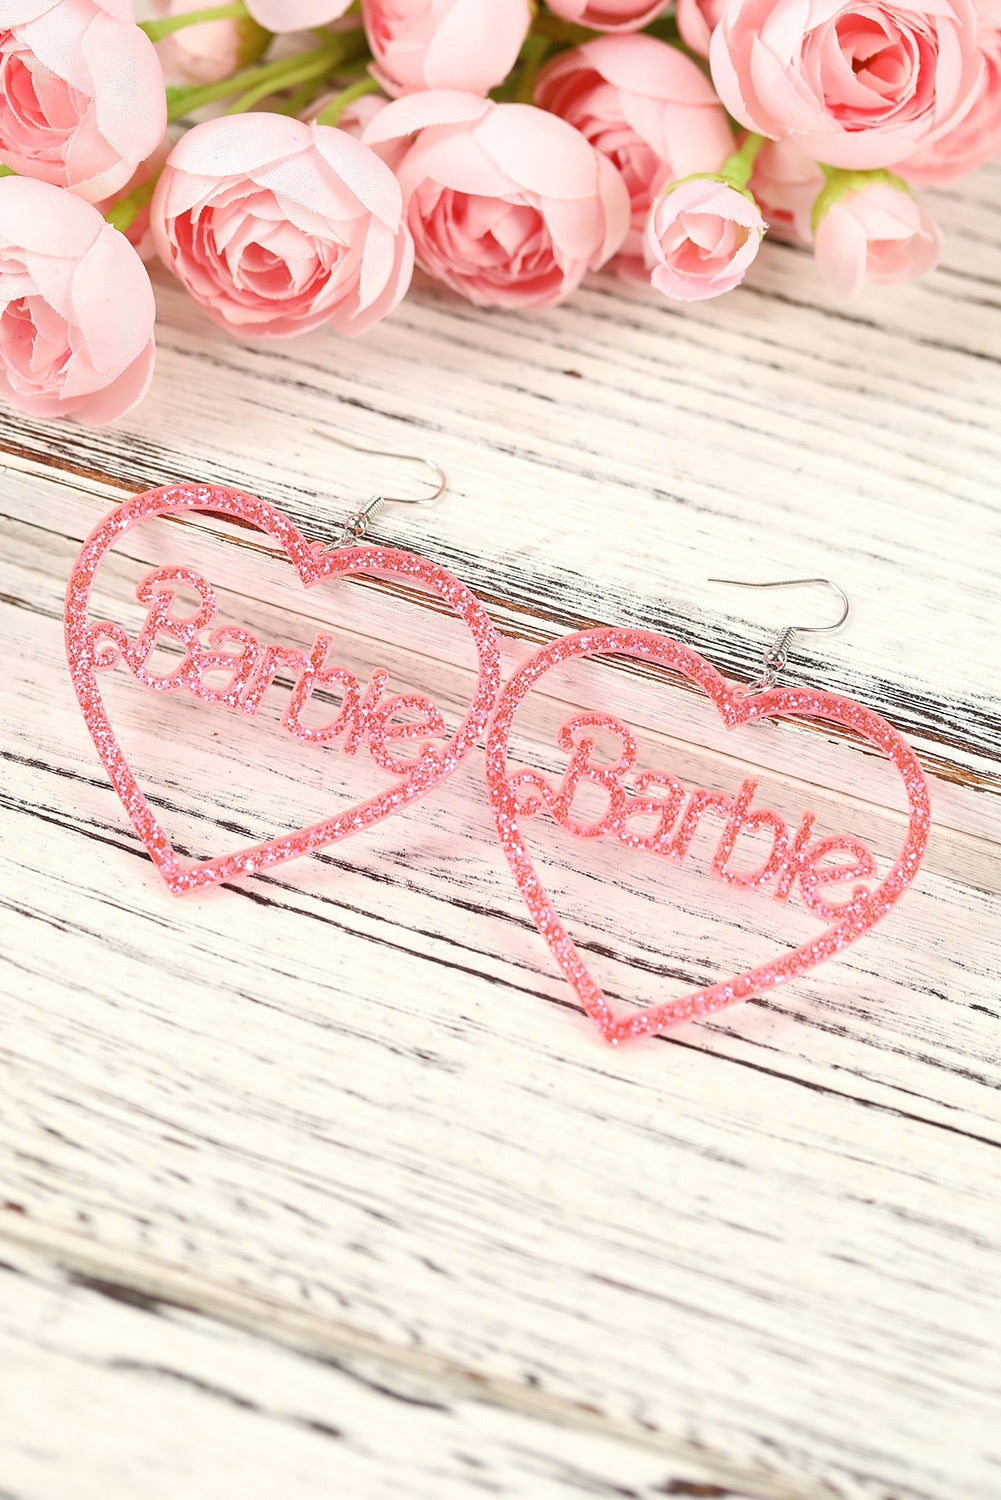 Pink Barbie Heart Dangle Valentine’s Earrings